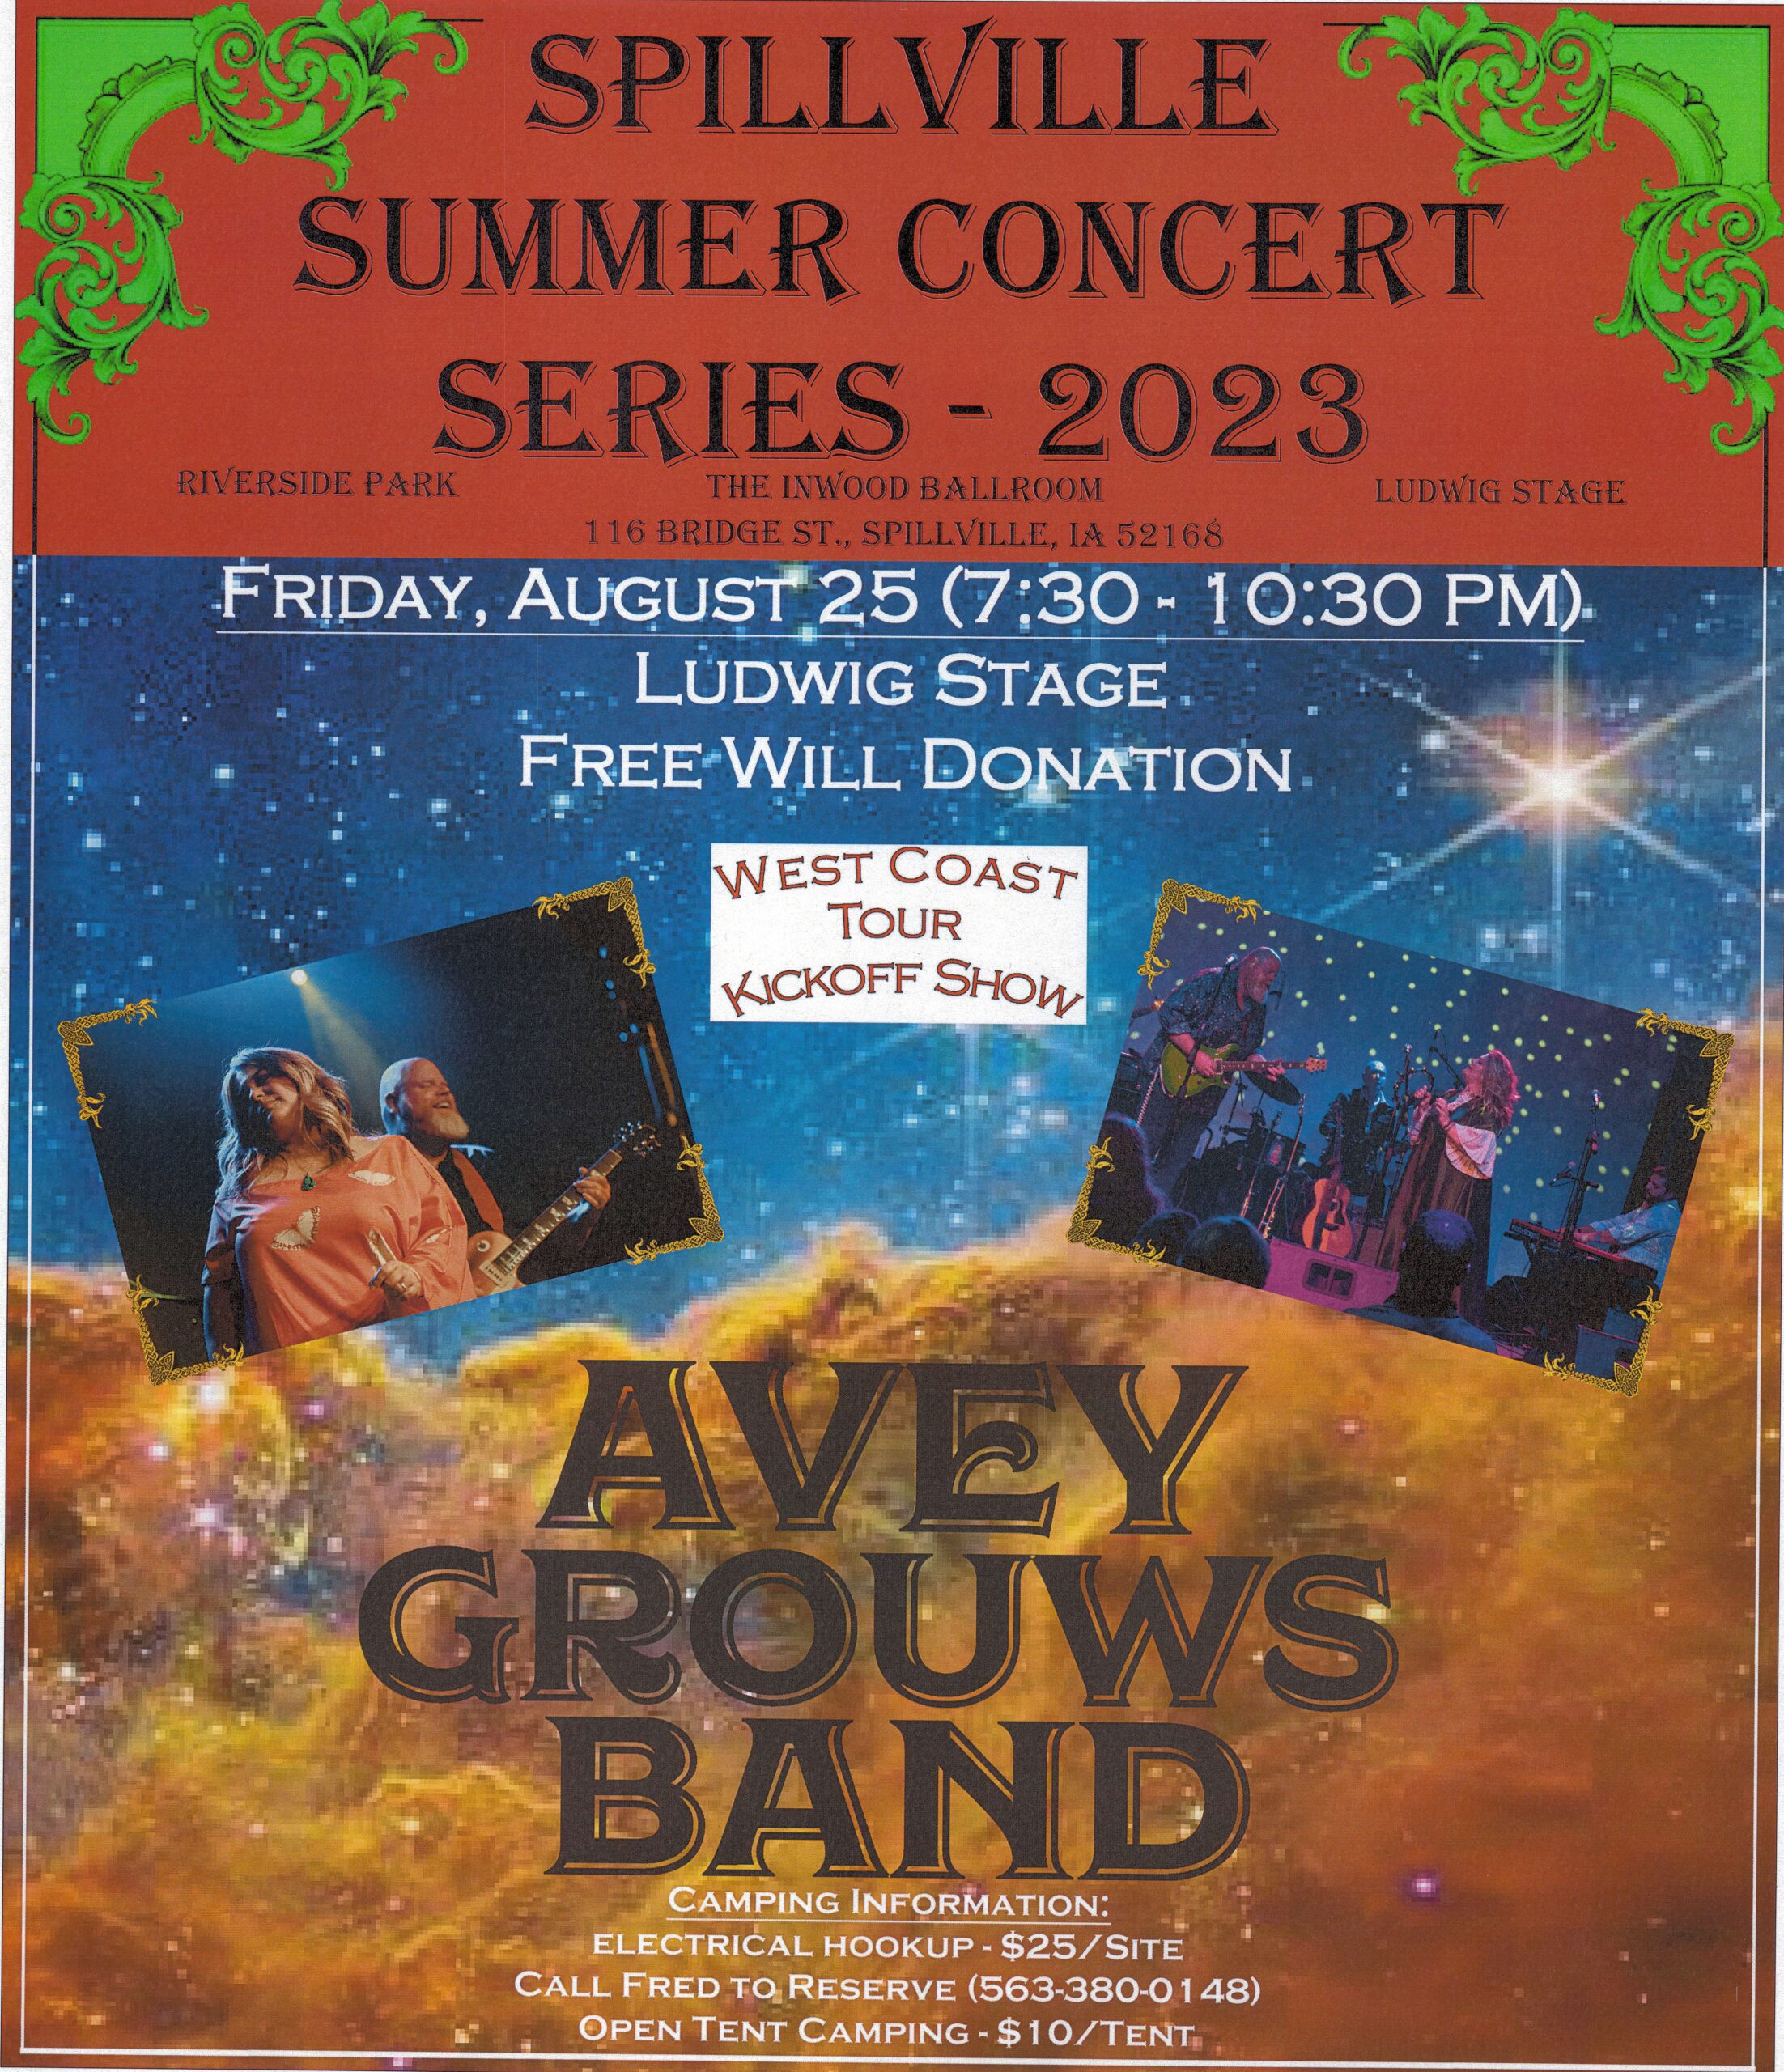 Spillville Summer Concert Series - Avey Grouws Band thumbnail